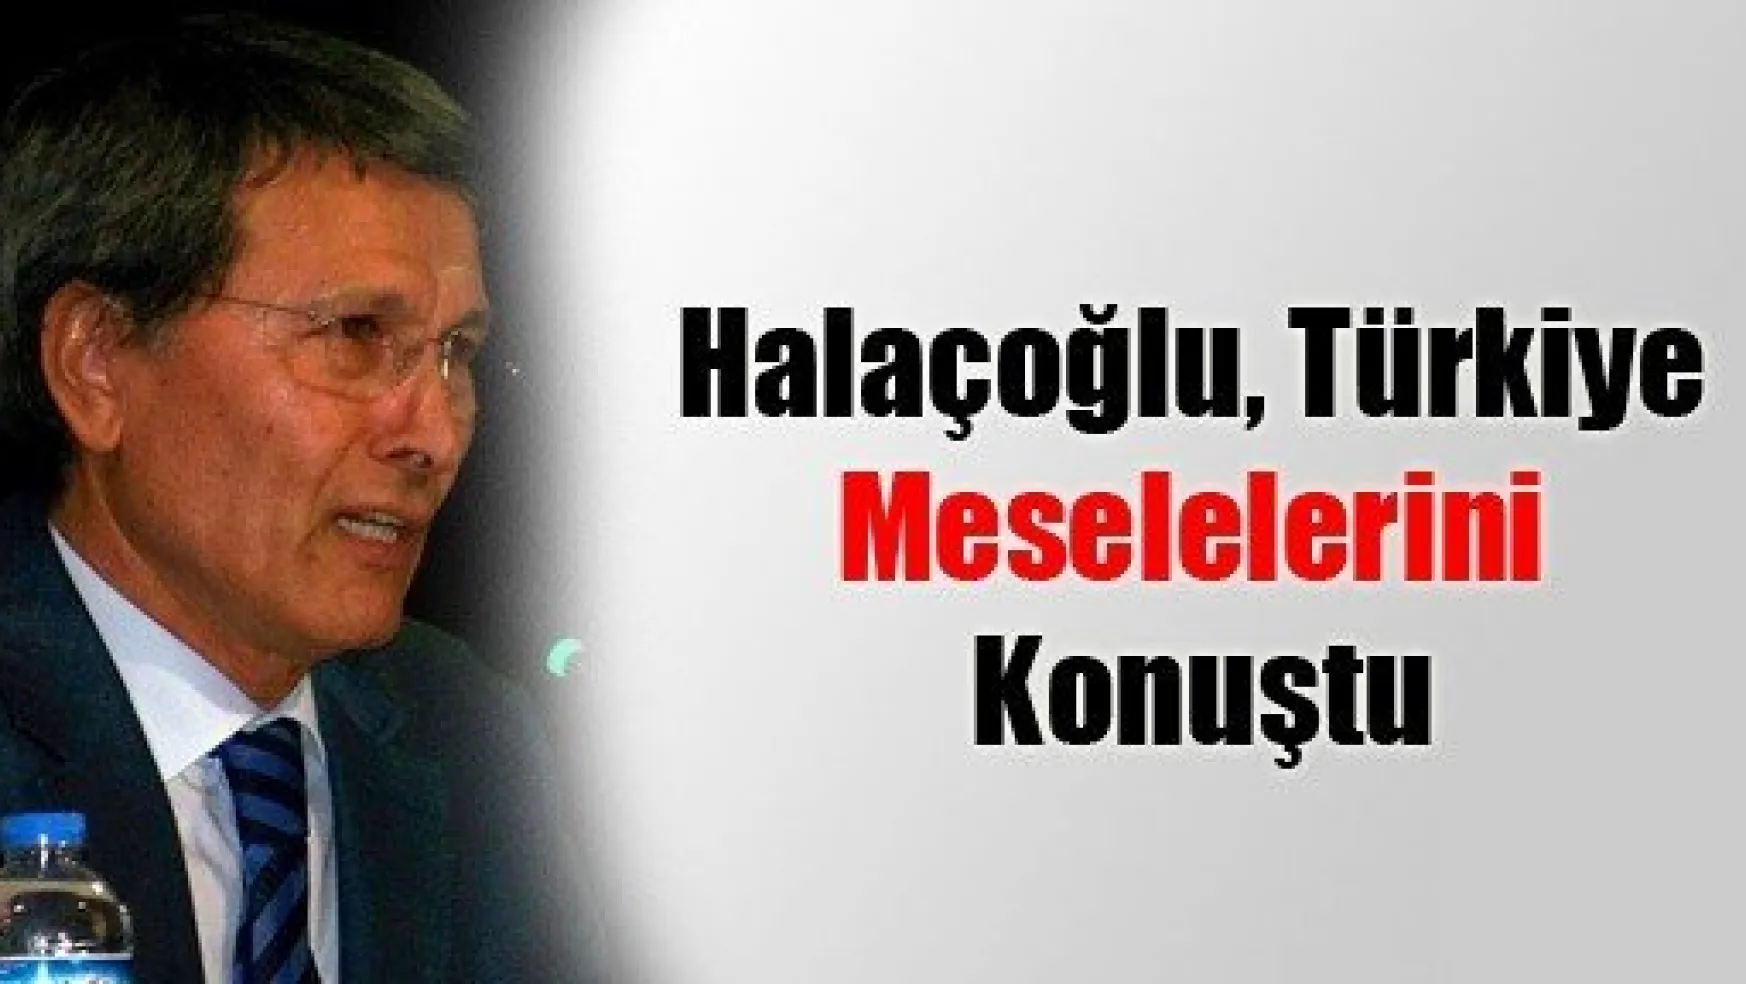 Halaçoğlu, Türkiye Meselelerini Konuştu